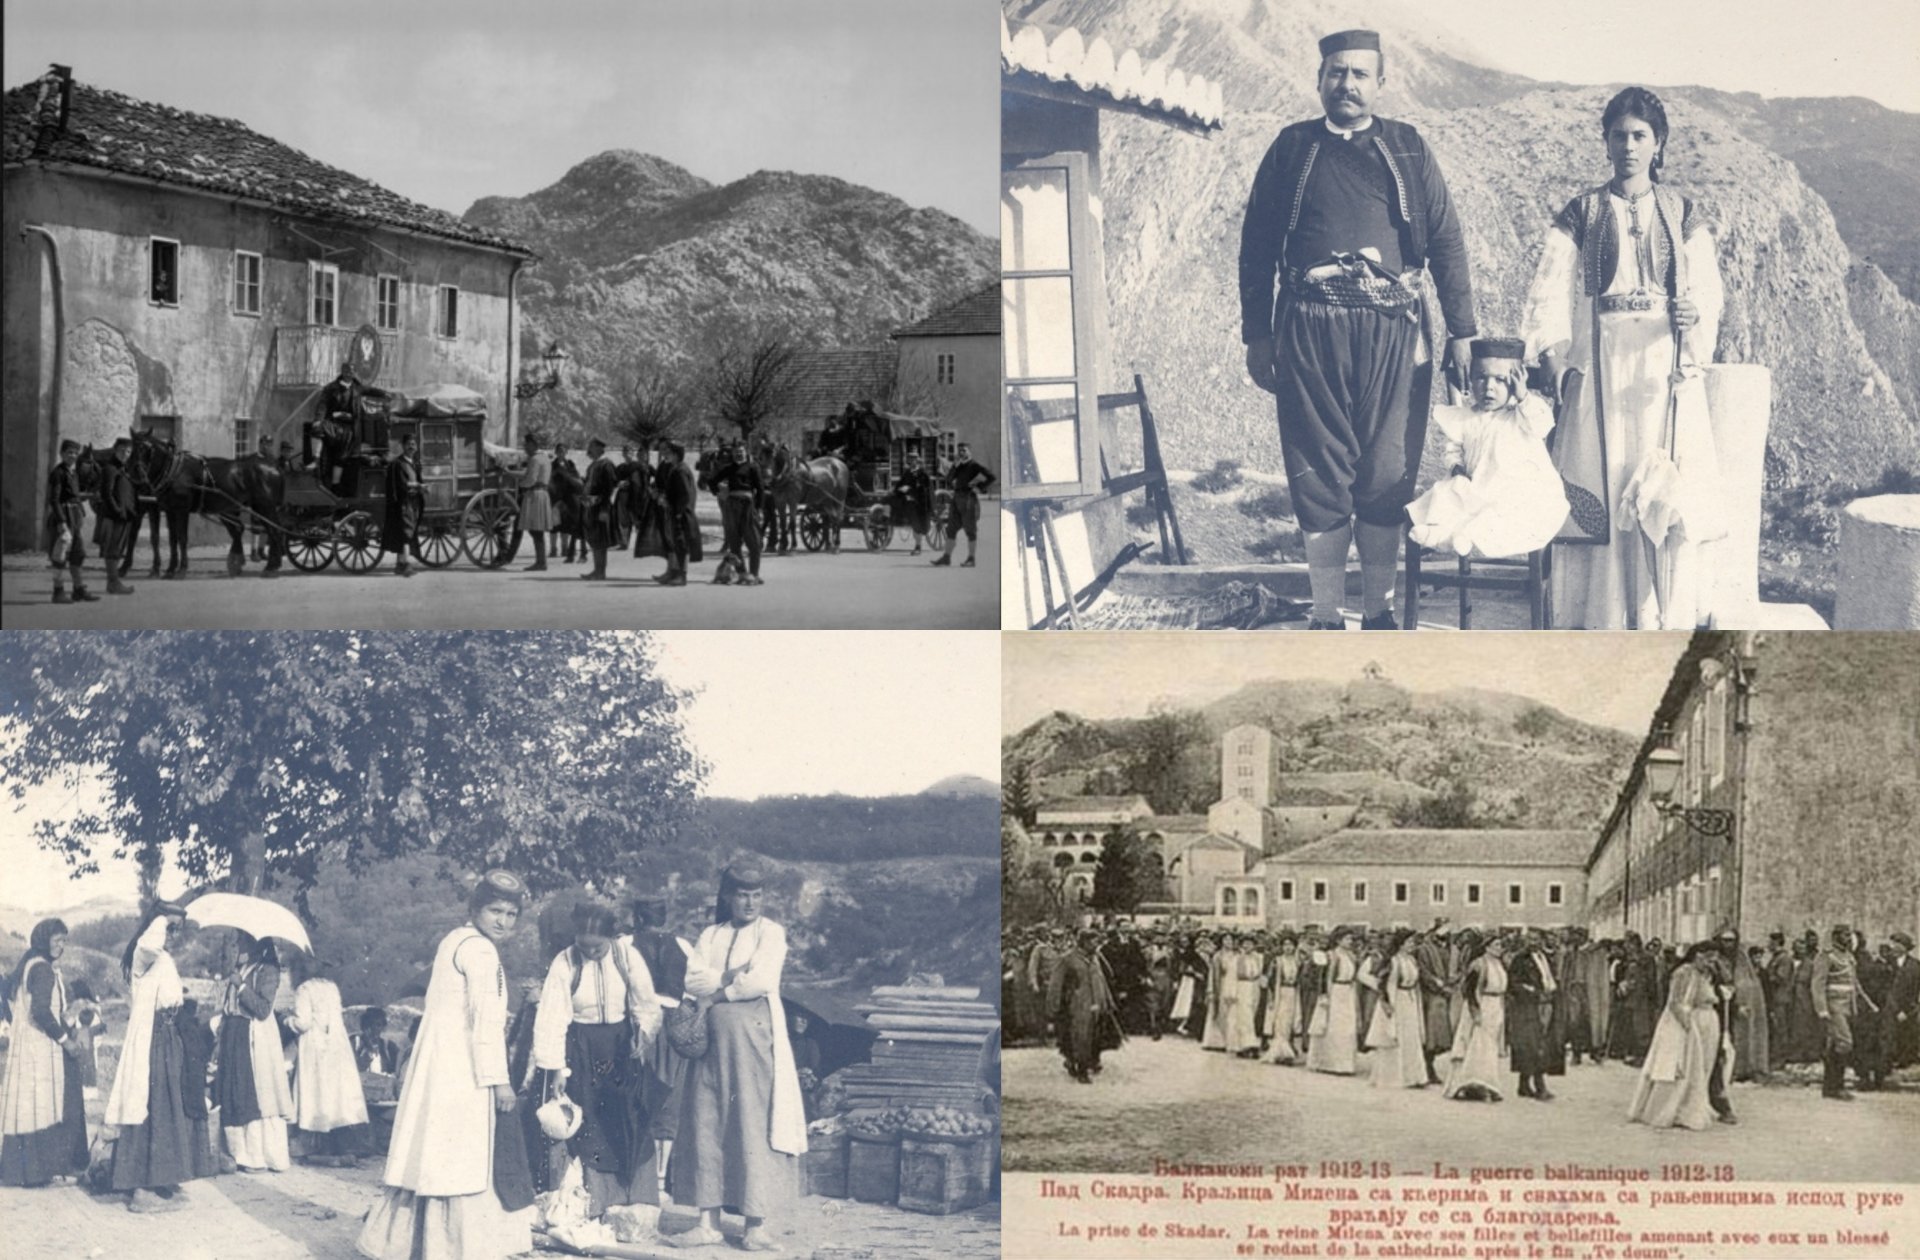 Crnogorska narodna nošnja - čuvar tradicije i nacionalnog duha